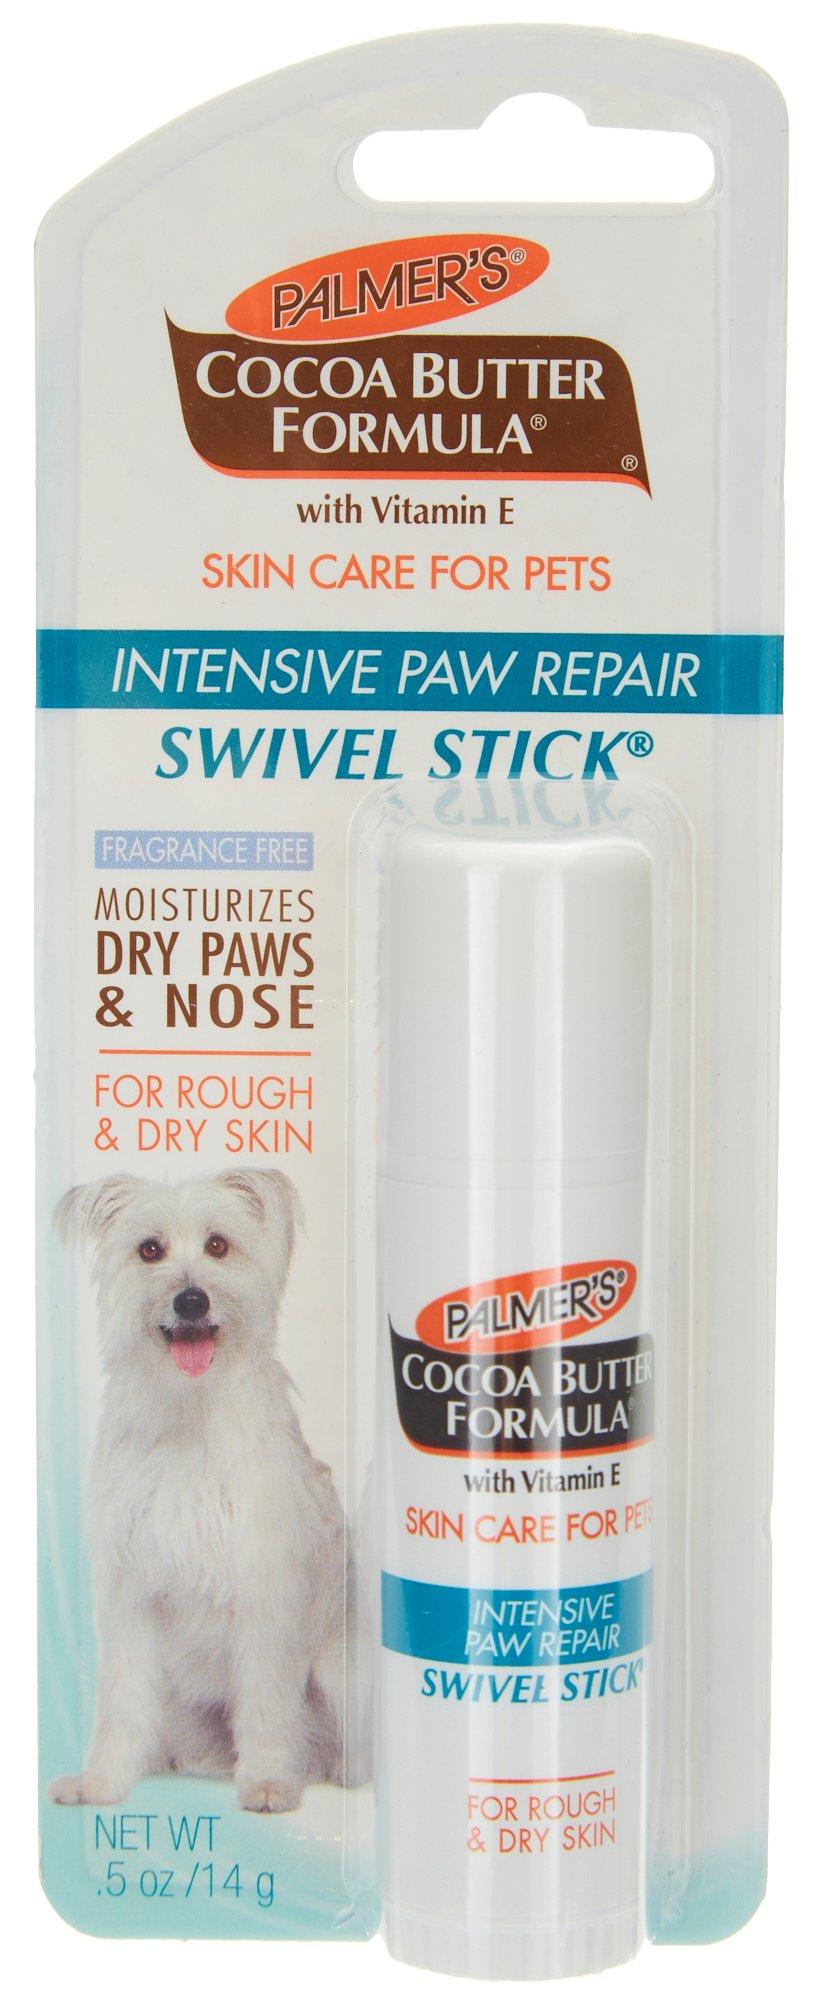 Intensive Paw Repair Swivel Stick